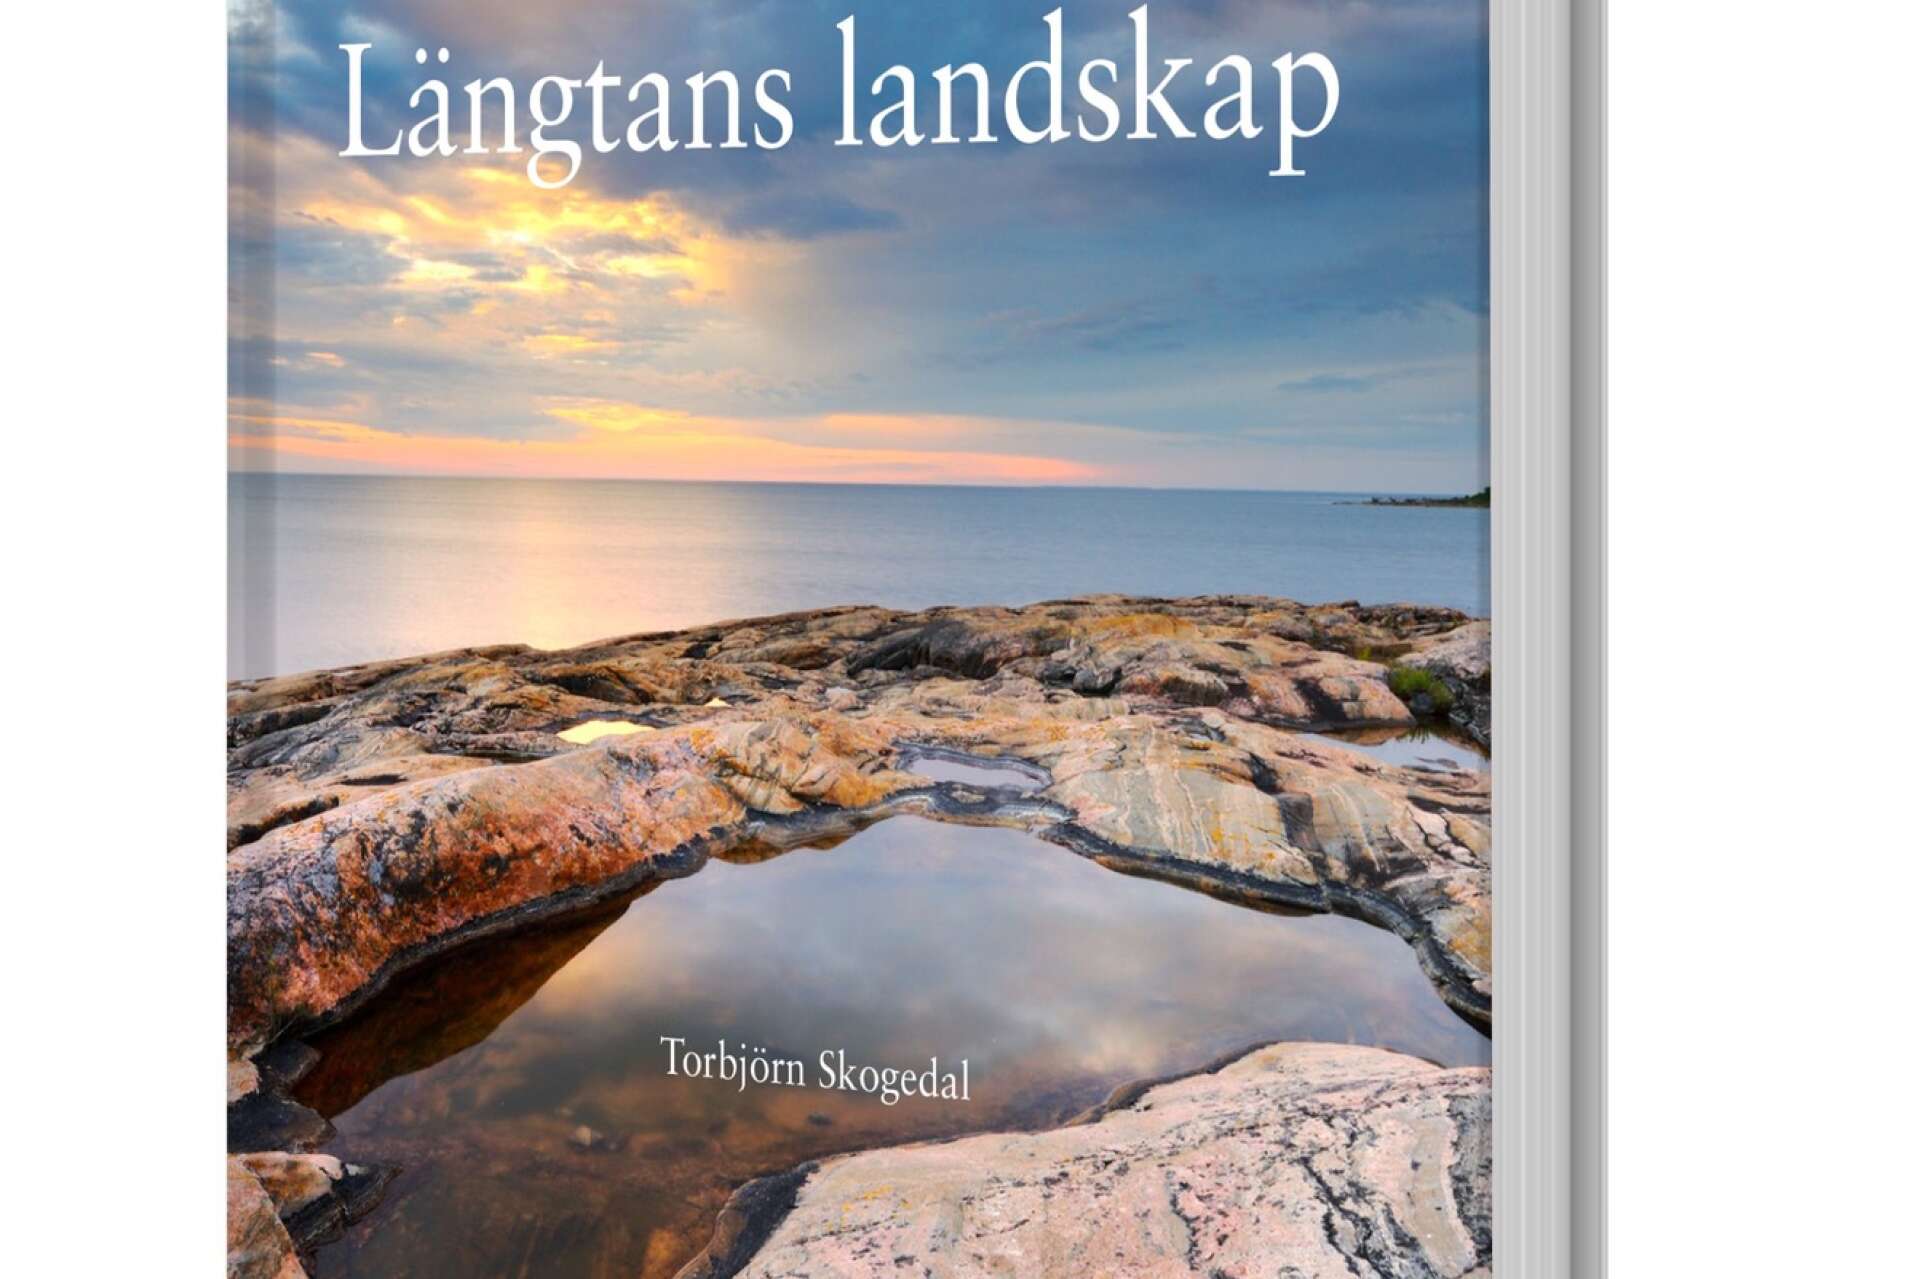 Natur- och landskapsfotografen Torbjörn Skogedal släppte nyligen sin tredje bok, Längtans landskap. 